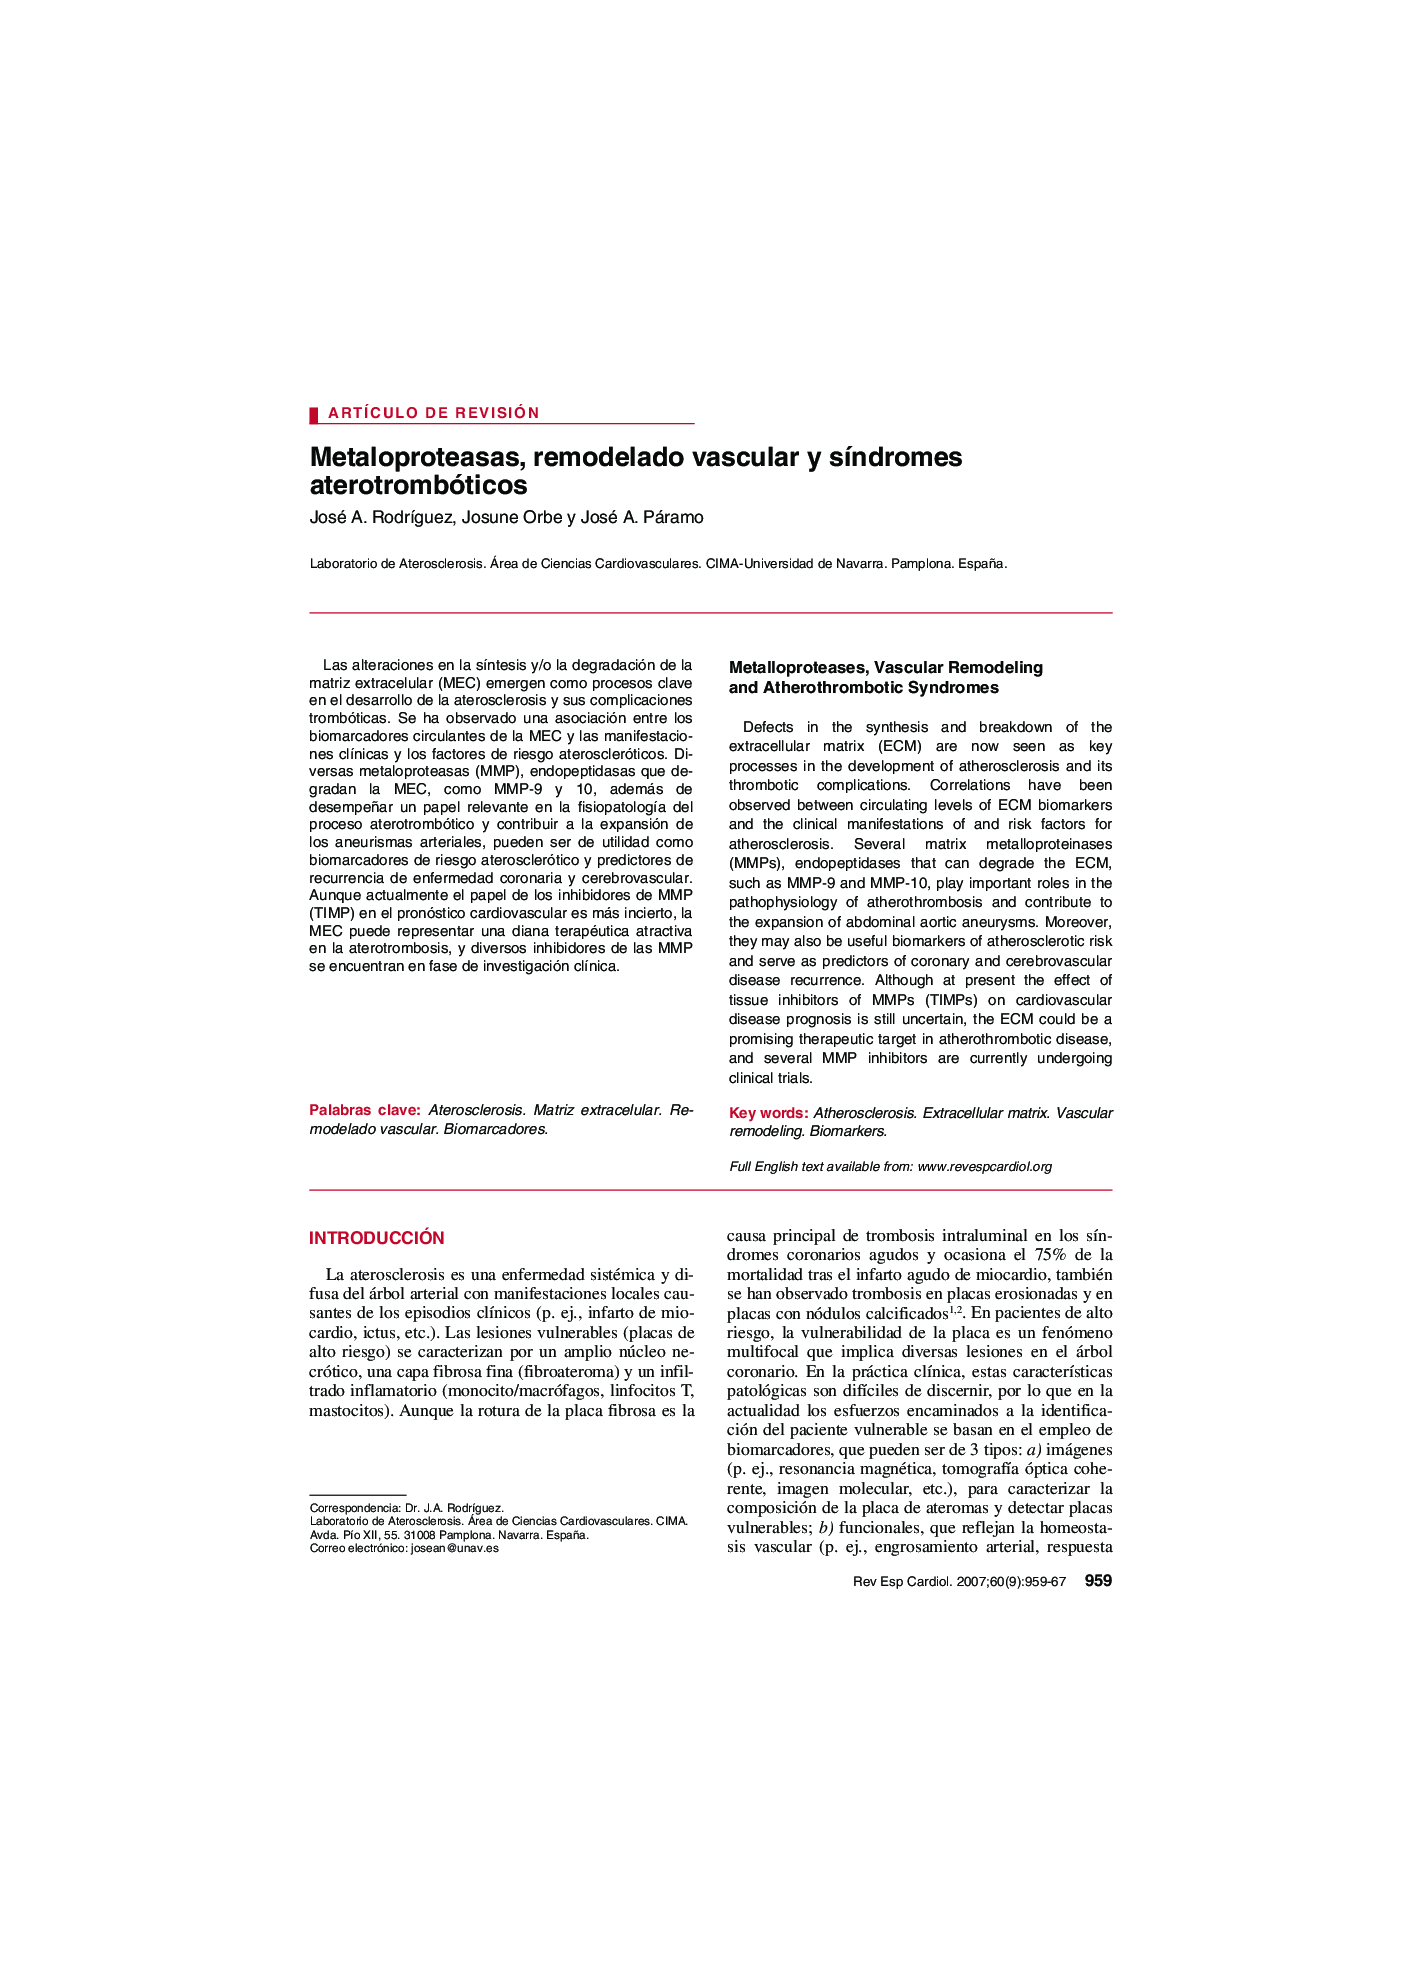 Metaloproteasas, remodelado vascular y syndromes aterotrombóticos